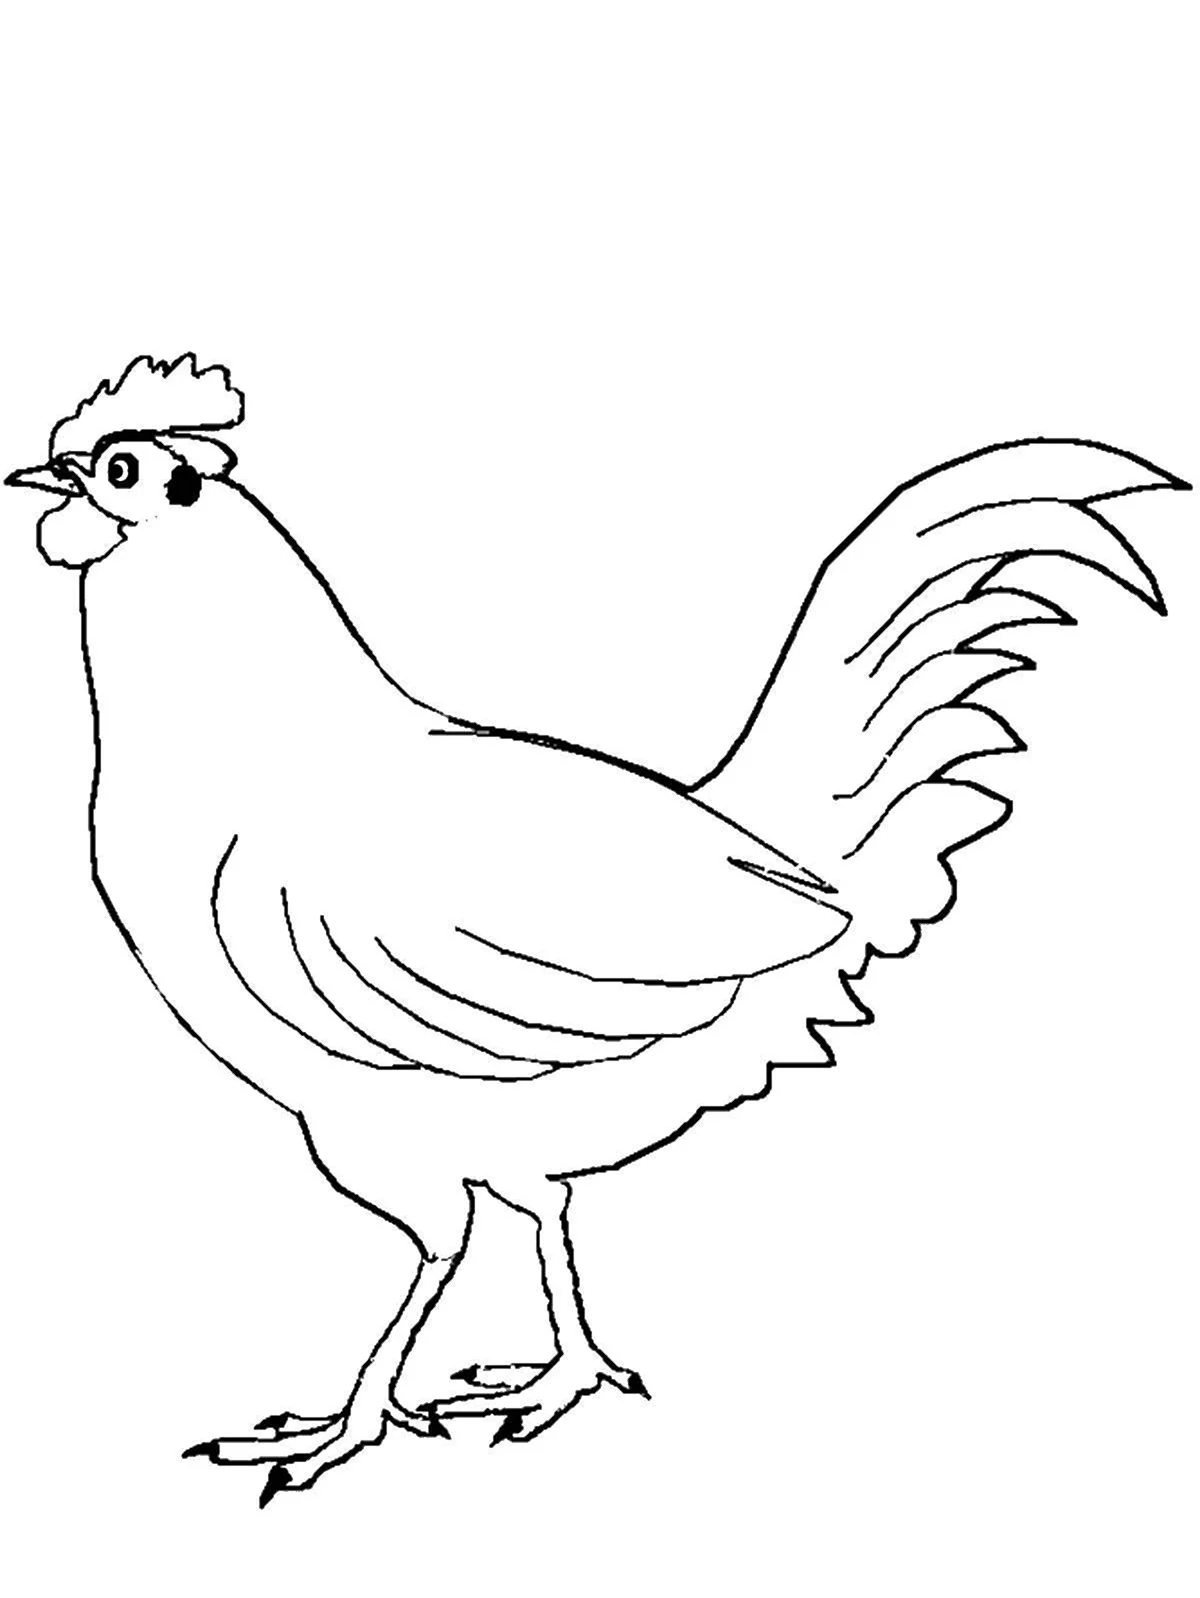 Раскраска домашние животные курица. Для срисовки